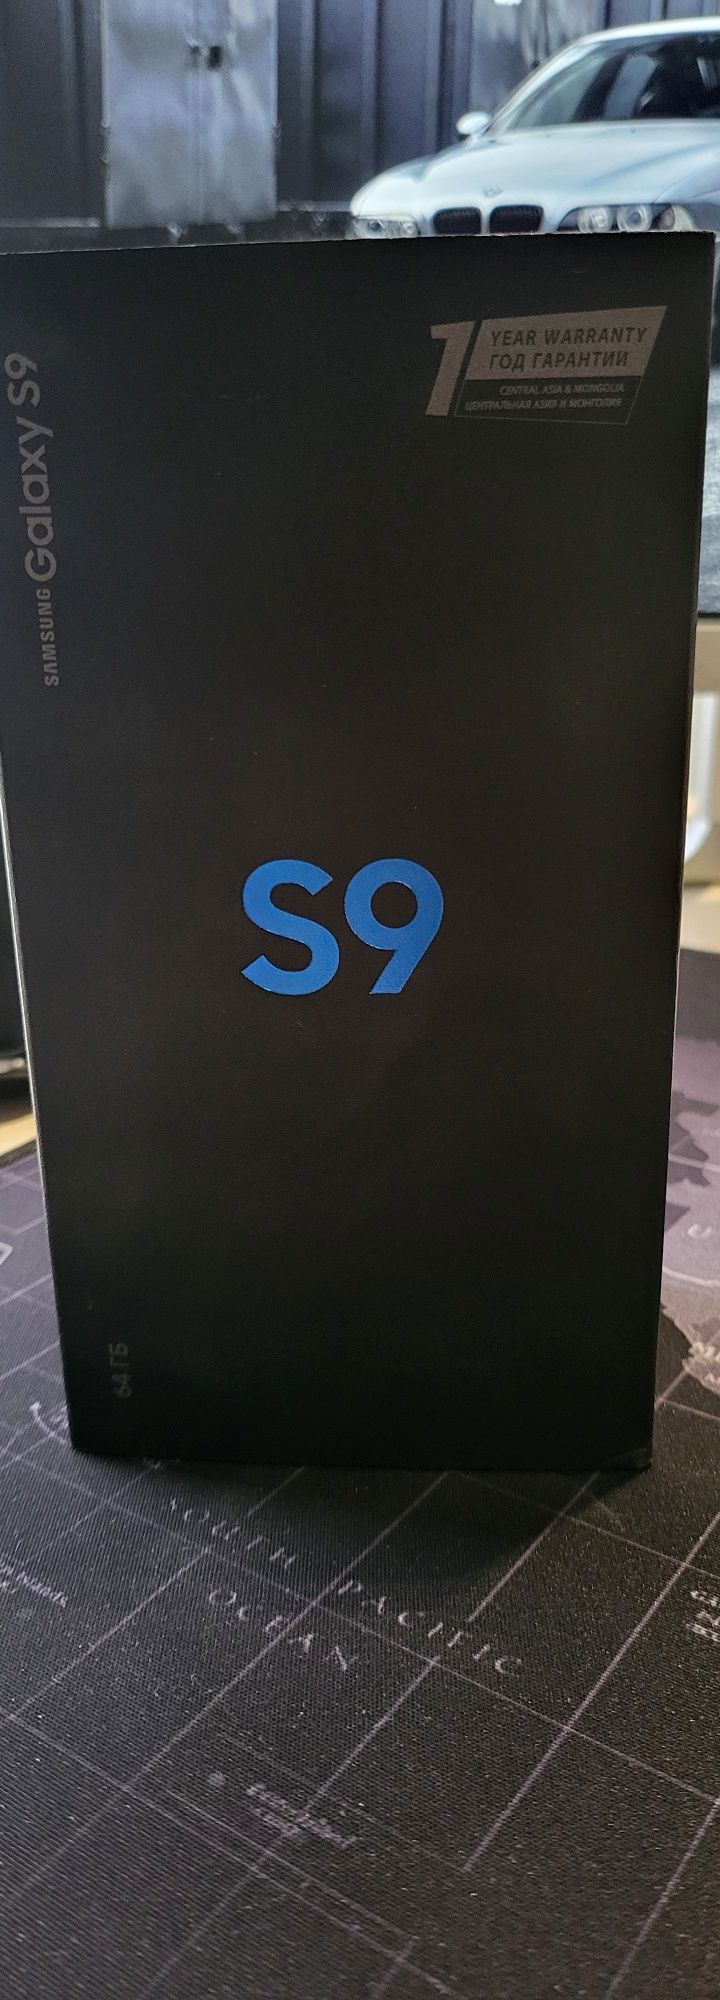 Samsung s9 Vietnam